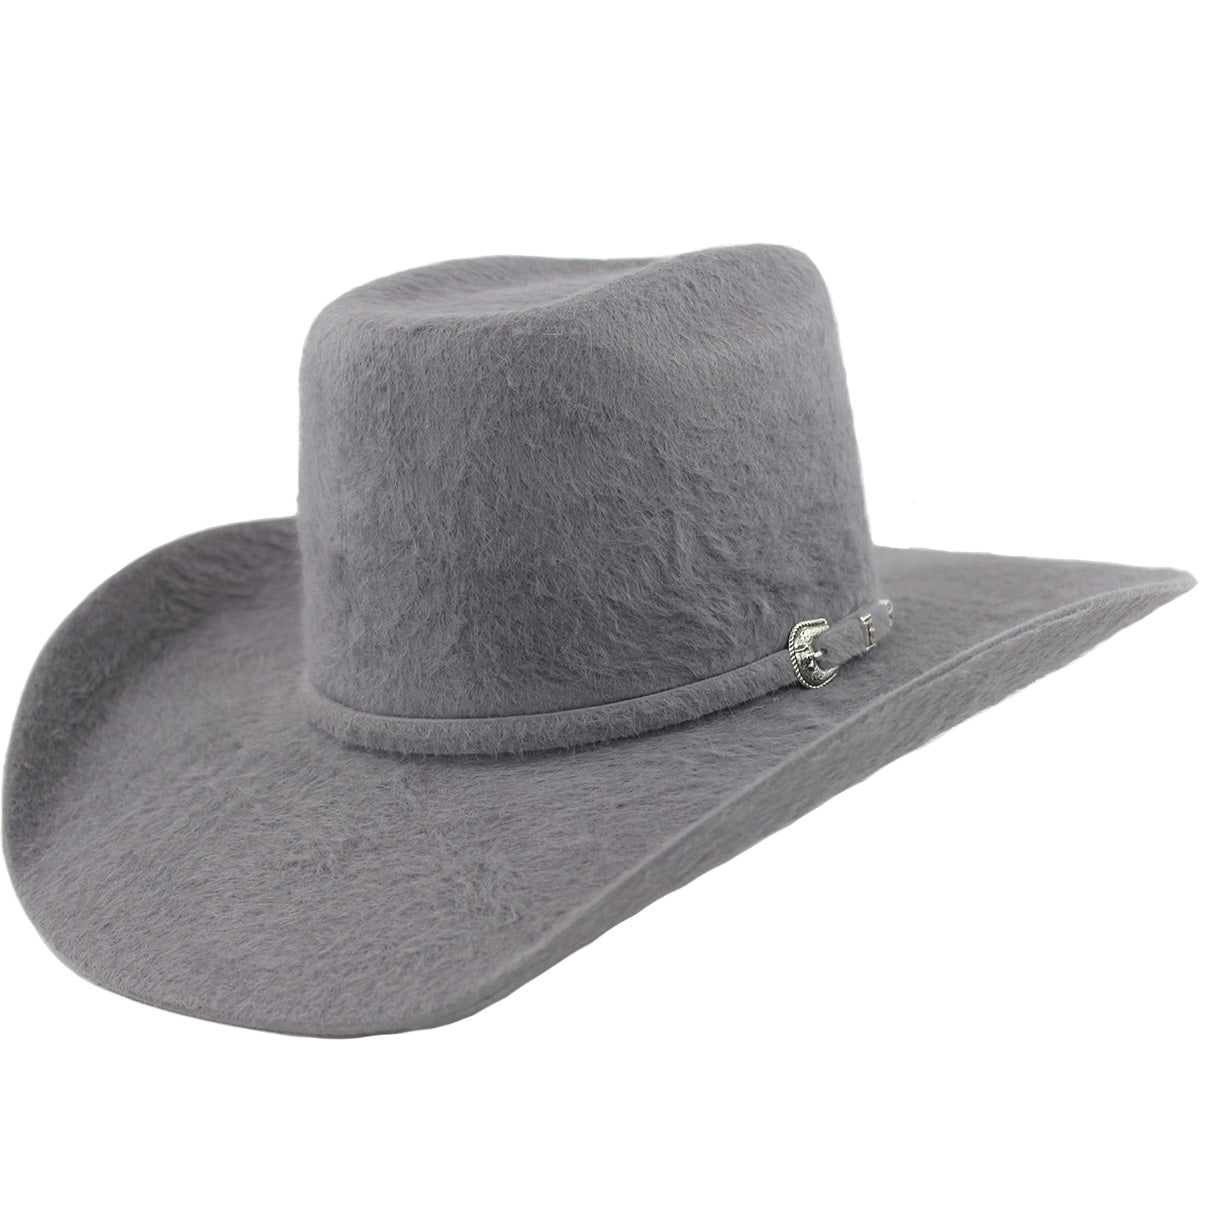 30x Dark Gray Grizzly Fur Felt Cowboy Hat